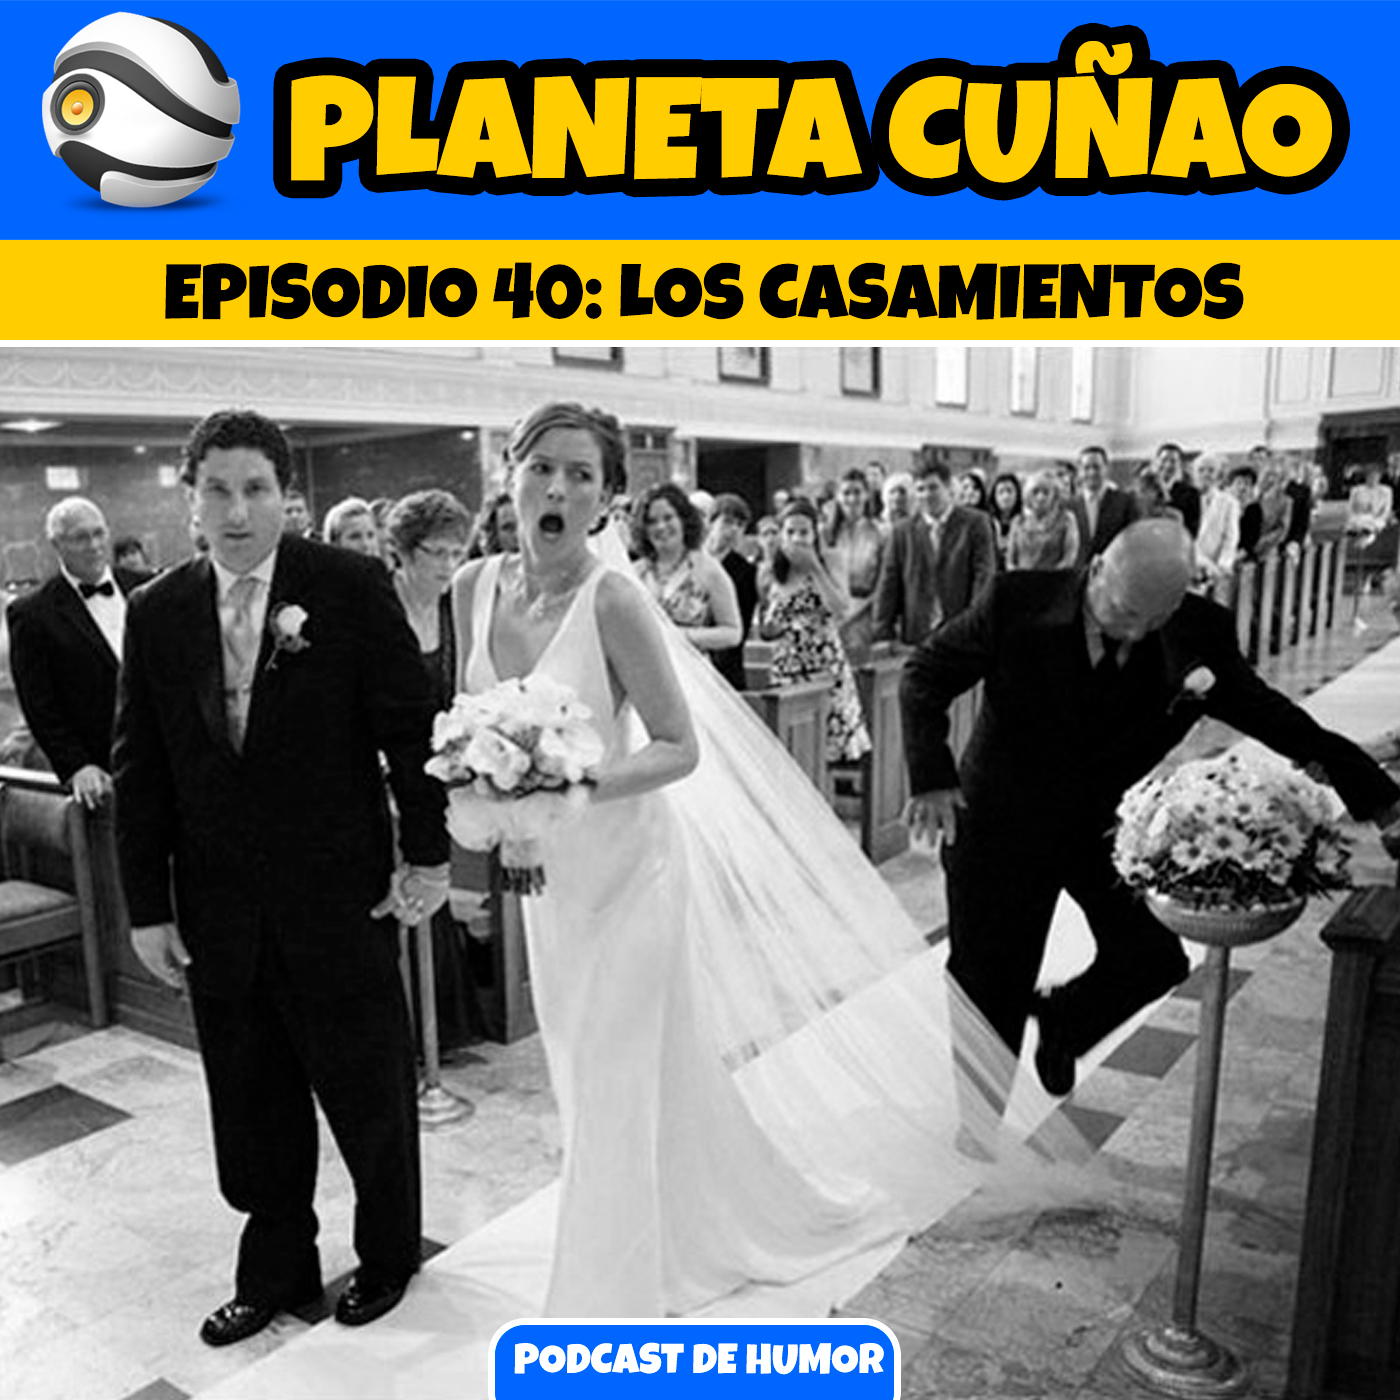 Episodio 40: Los casamientos